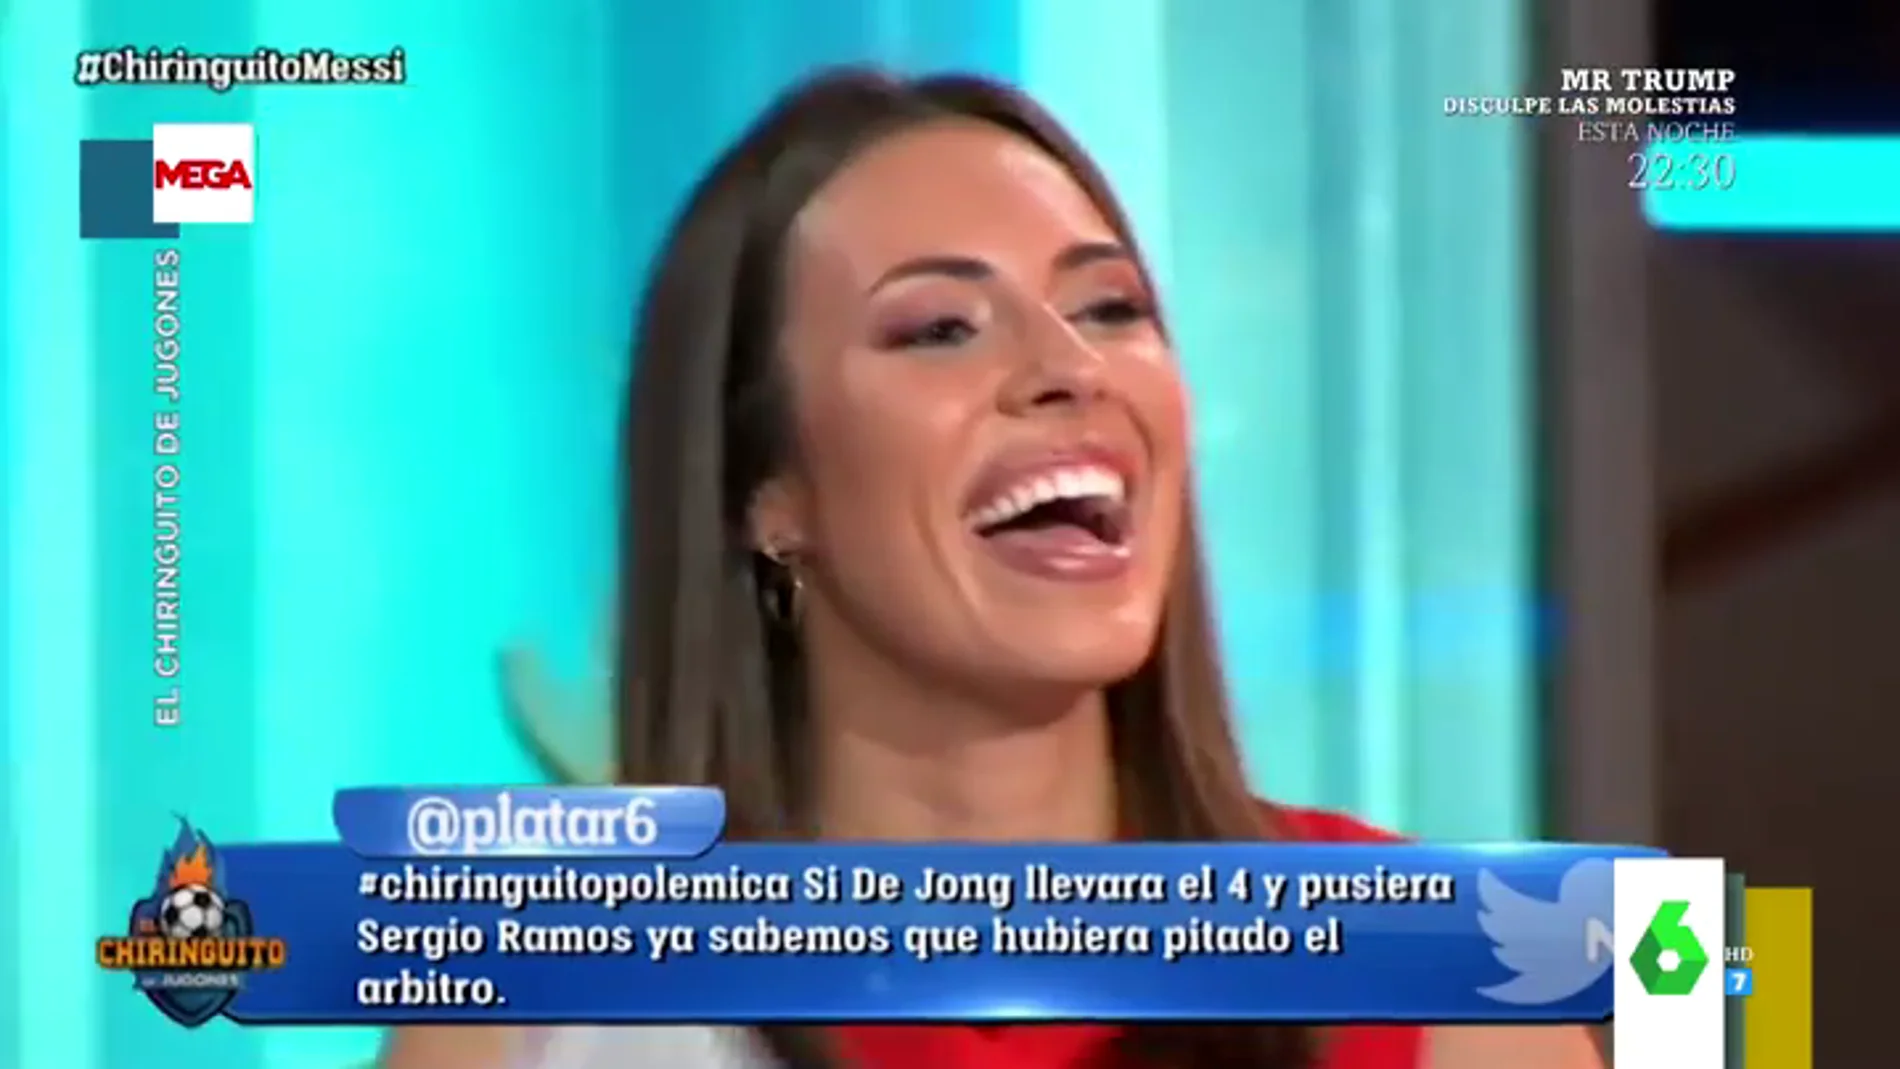 La divertida pillada a Sandra Díaz Arcas al leer el tuit de 'Ana Bohuelo' desata un ataque de risa en El Chinringuito